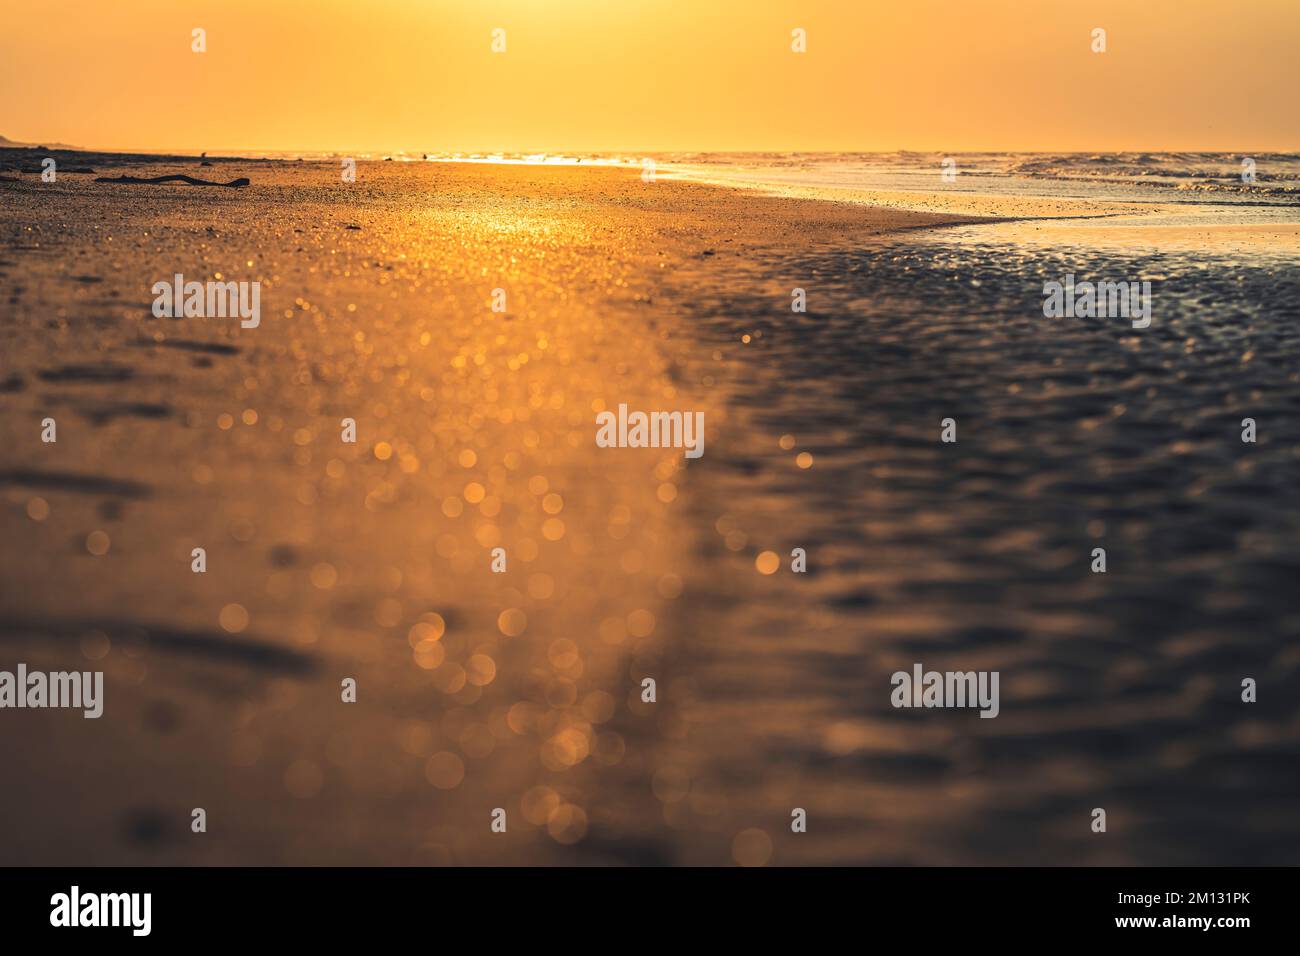 Ambiance nocturne sur la plage de Norderney, près de la perspective du sol, hors foyer Banque D'Images